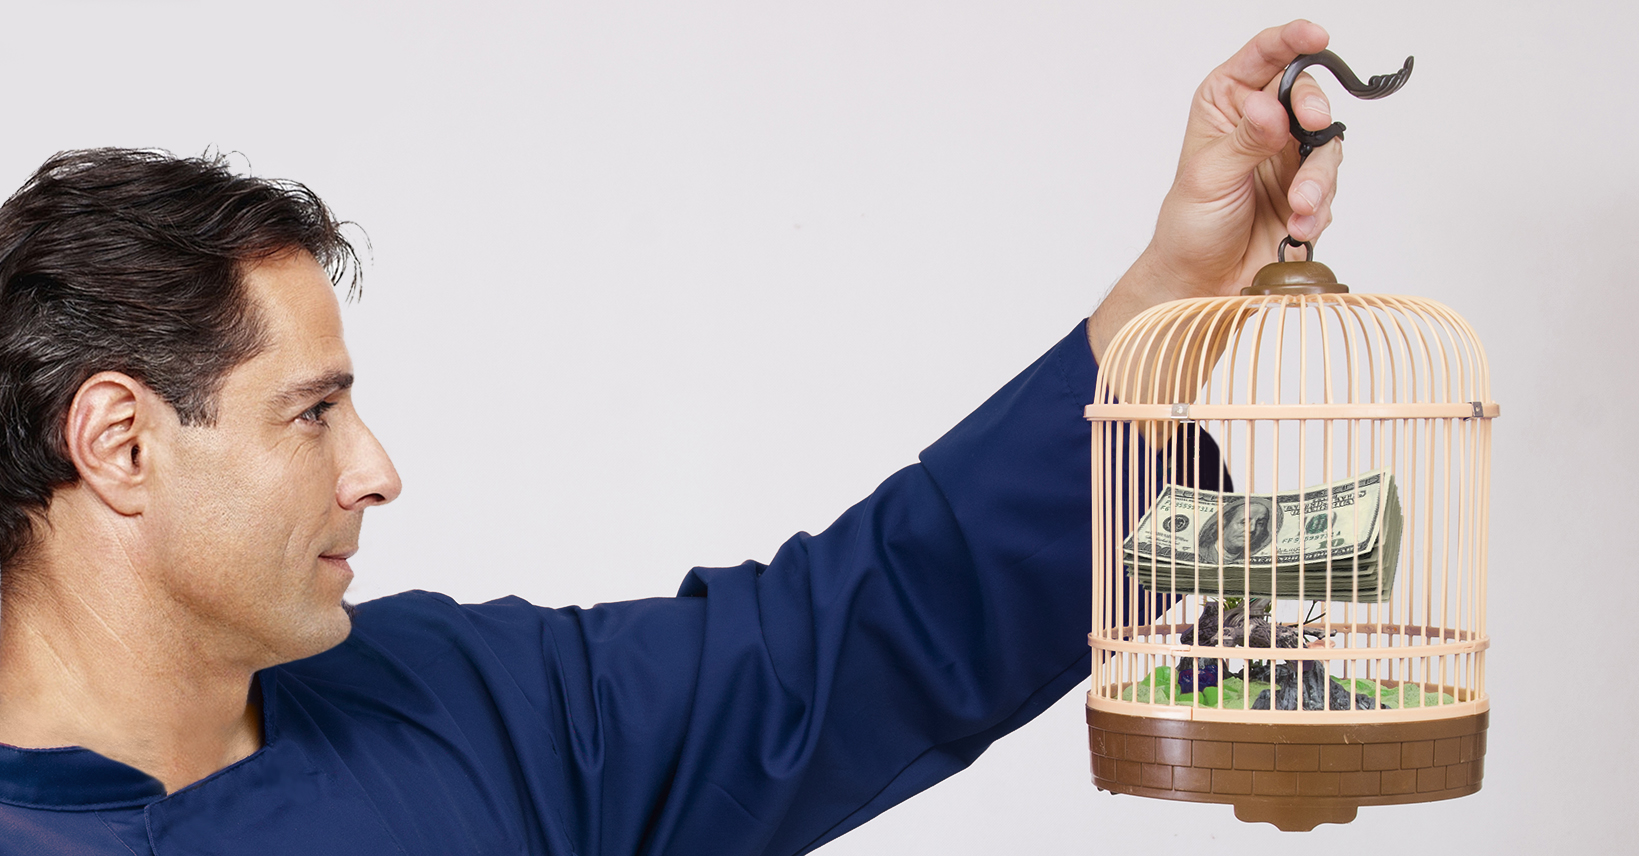 صورة مواطن يحتجز راتبه داخل قفص طيور لحين انقضاء الشهر واستلامه الراتب الجديد